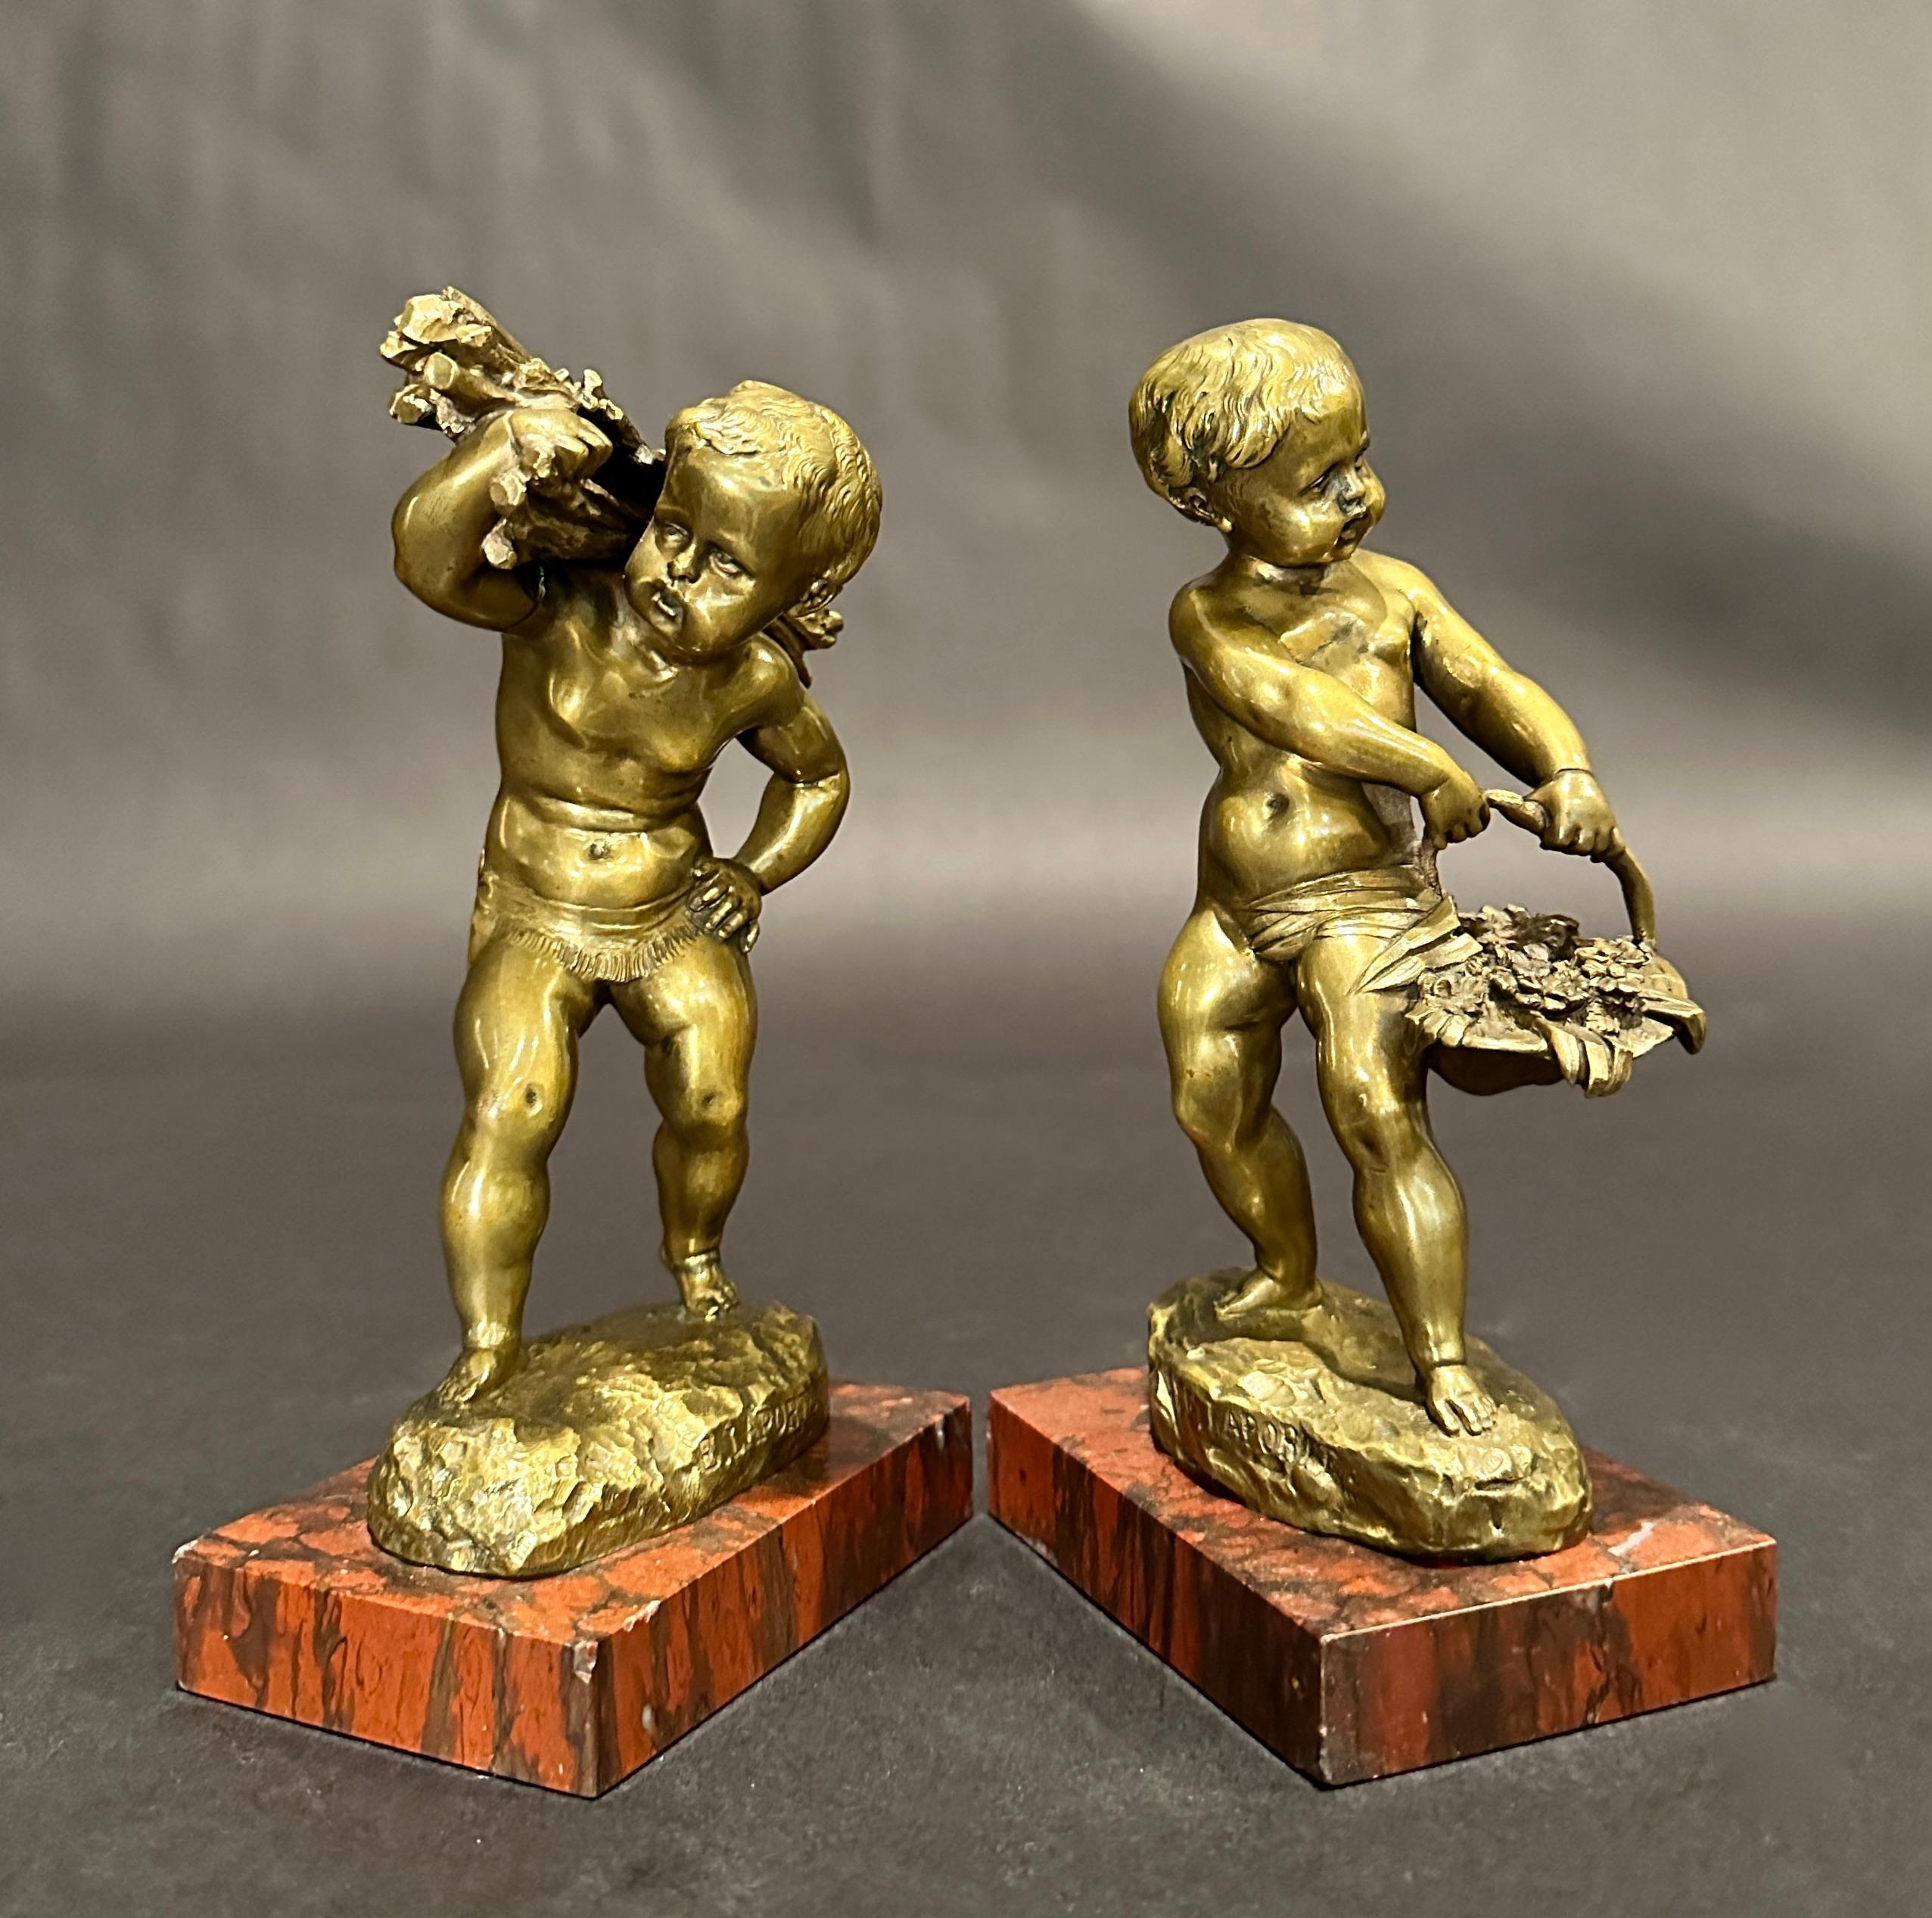 Sculptures en bronze françaises du XIXe siècle représentant de jeunes fermiers par Emile Laporte (1858 - 1907), France. L'un des garçons porte un panier de fleurs, l'autre un fagot de bâtons. Signées, montées sur des socles en marbre rouge.